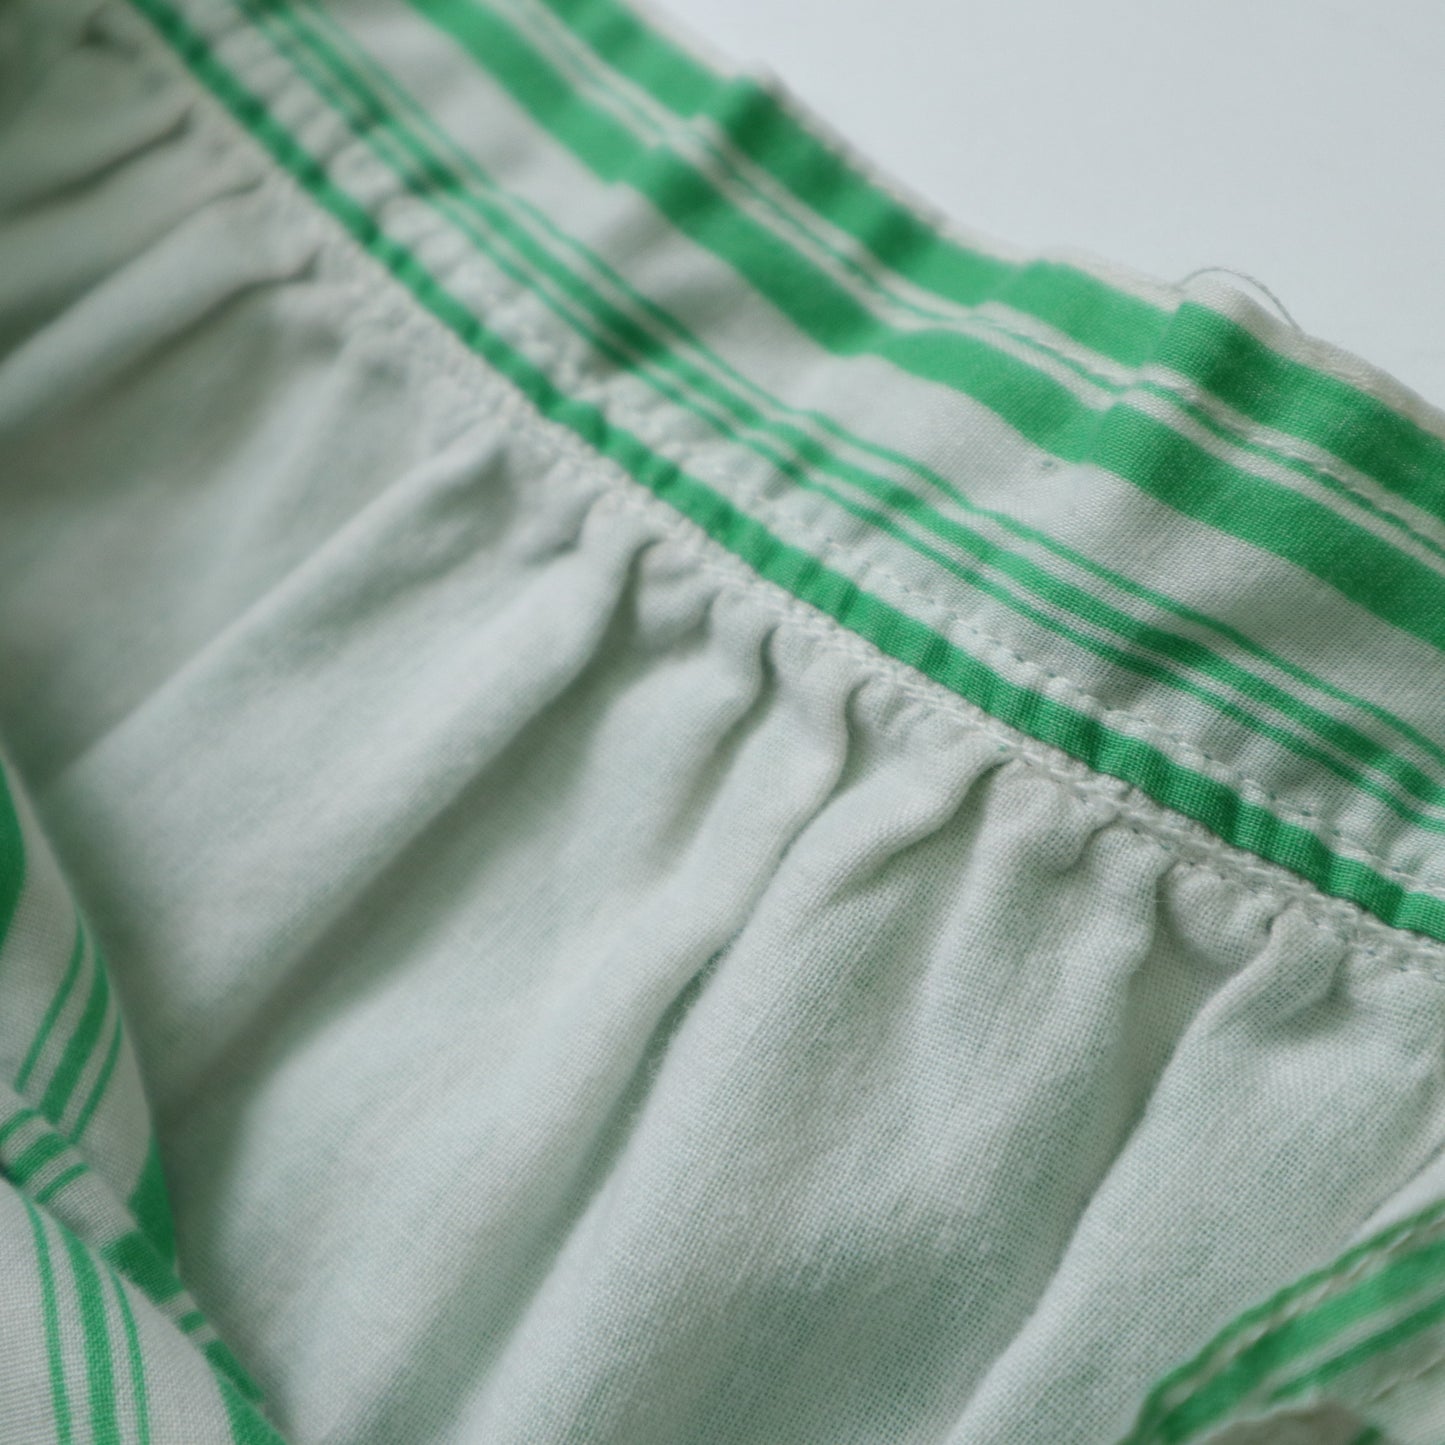 1970s 美國製 綠白條紋半身裙 ILGWU/Union made